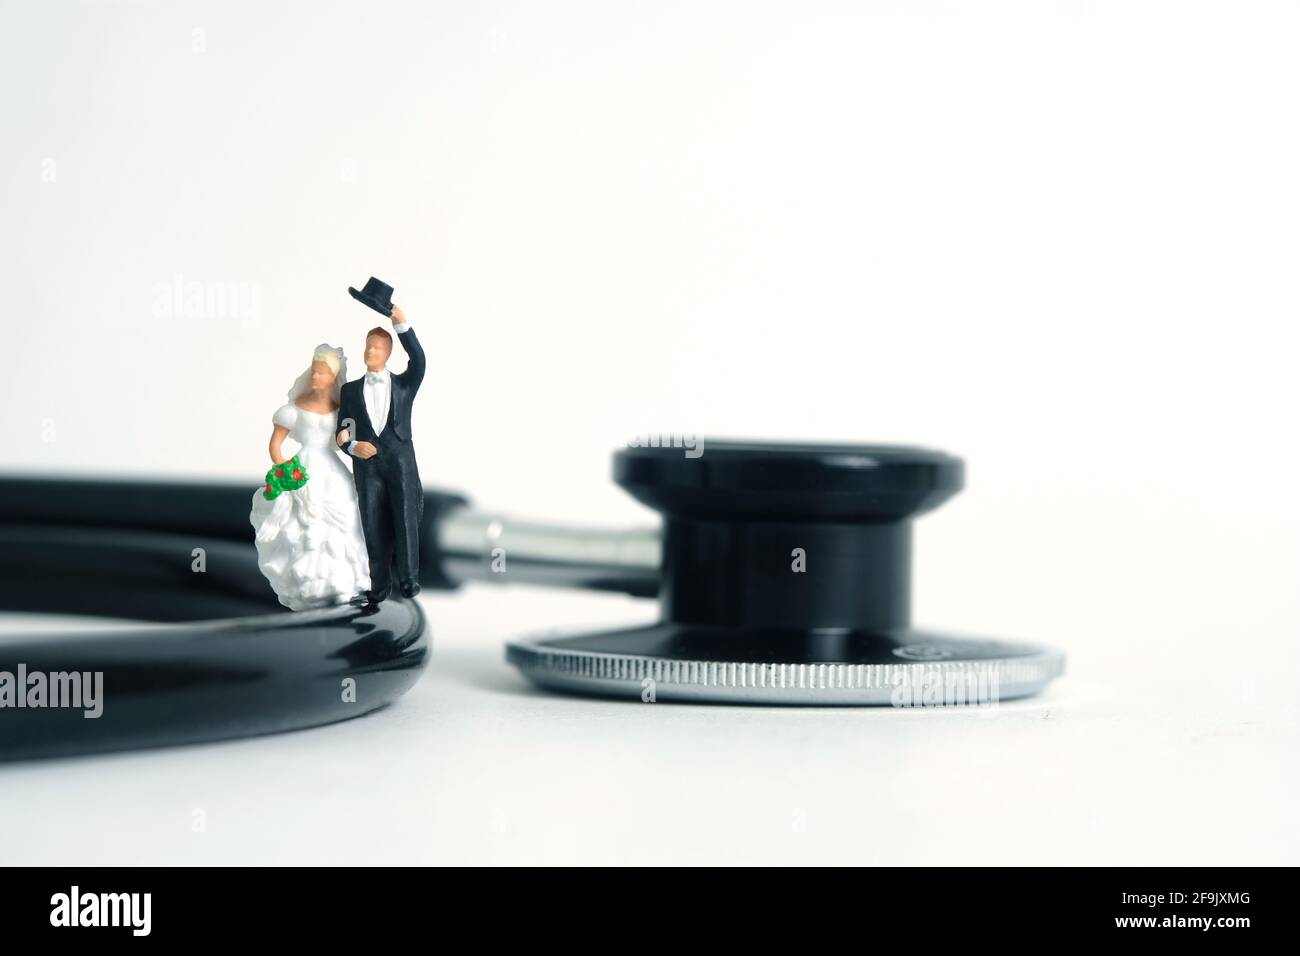 Mariage mariage mariage et couple examen médical concept miniature personnes jouet photographie. Mariée et marié avec stéthoscope isolé sur fond blanc. Banque D'Images